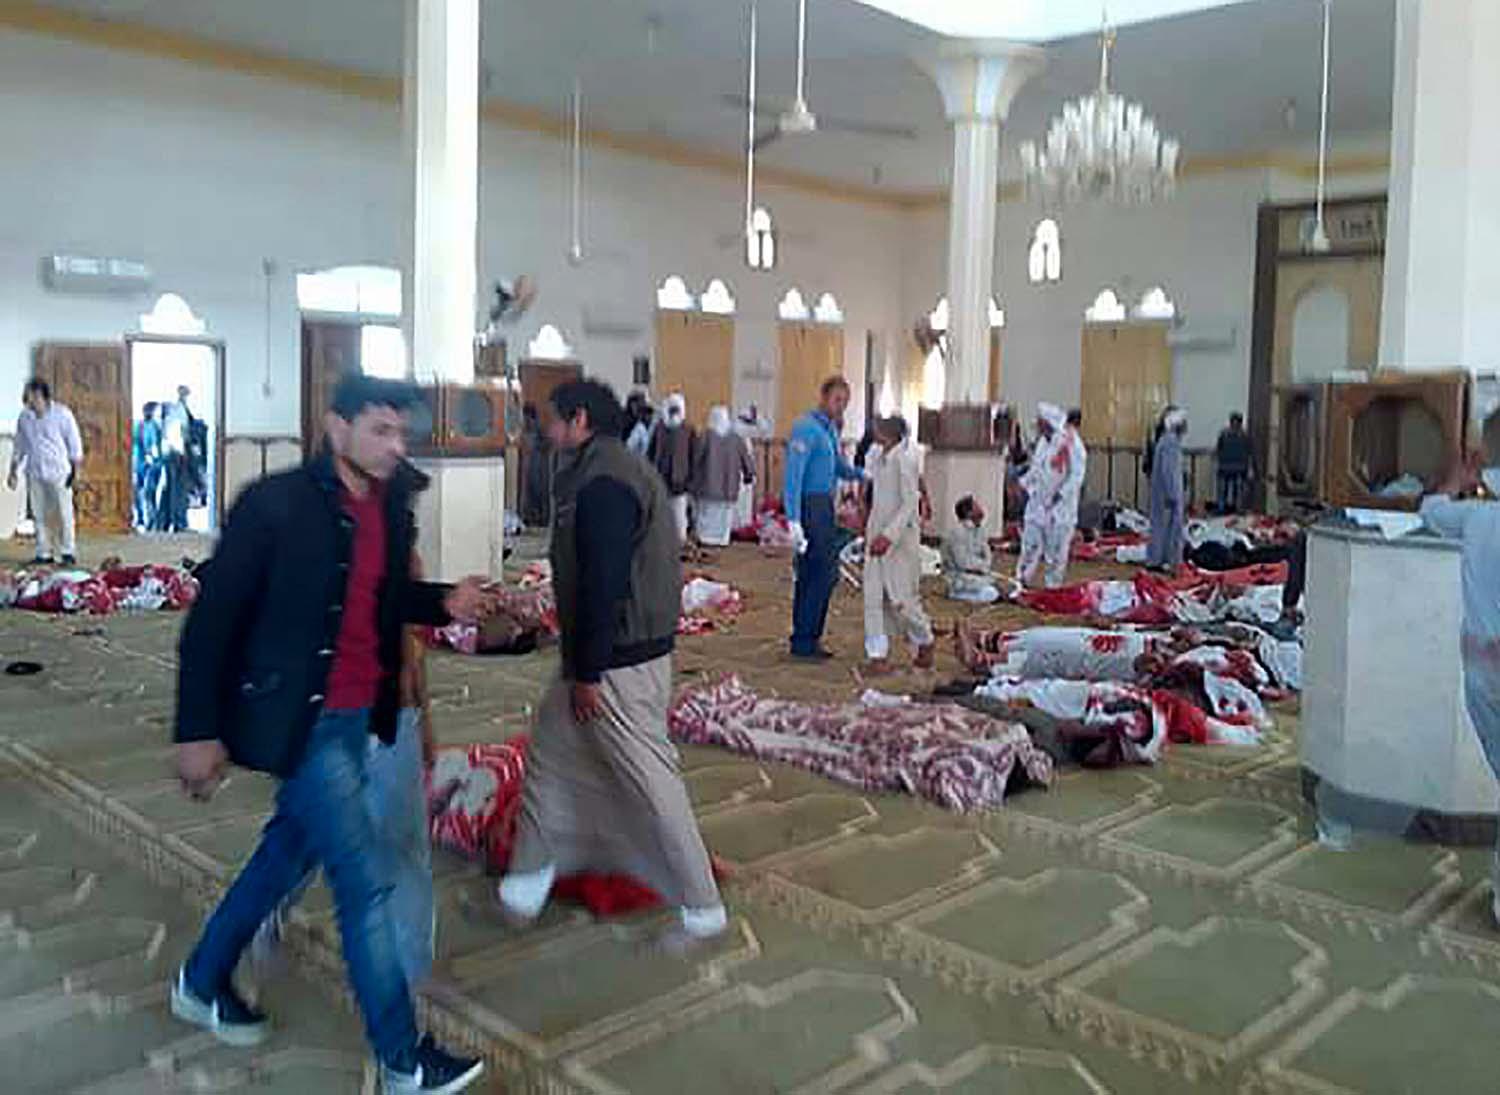 Moskén efter attacken.